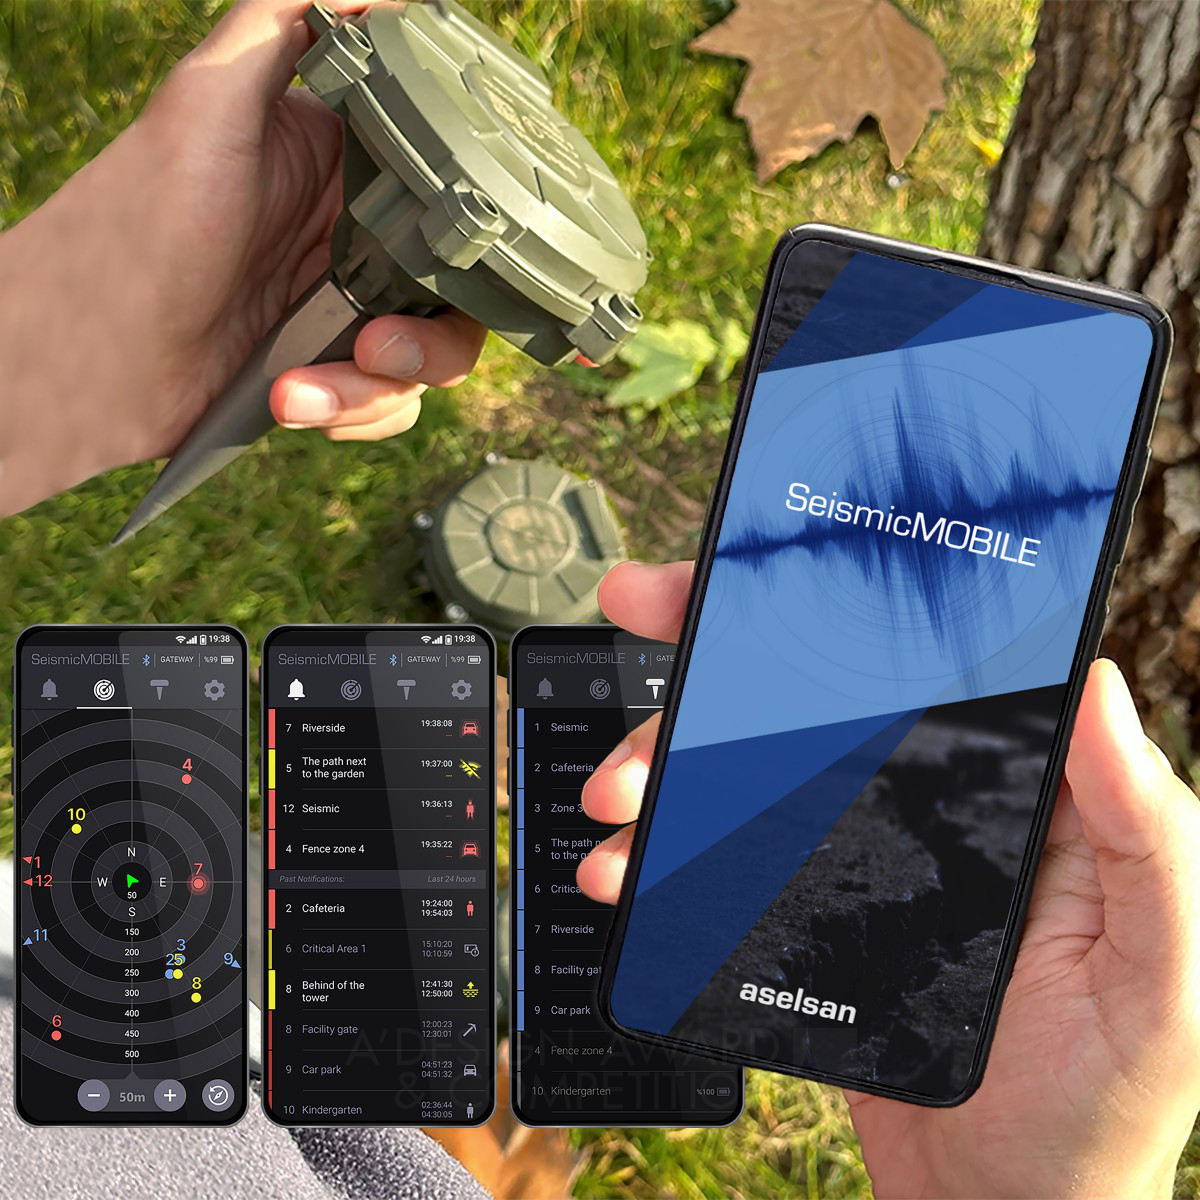 Seismic Mobile: Революционное мобильное приложение для безопасности объектов